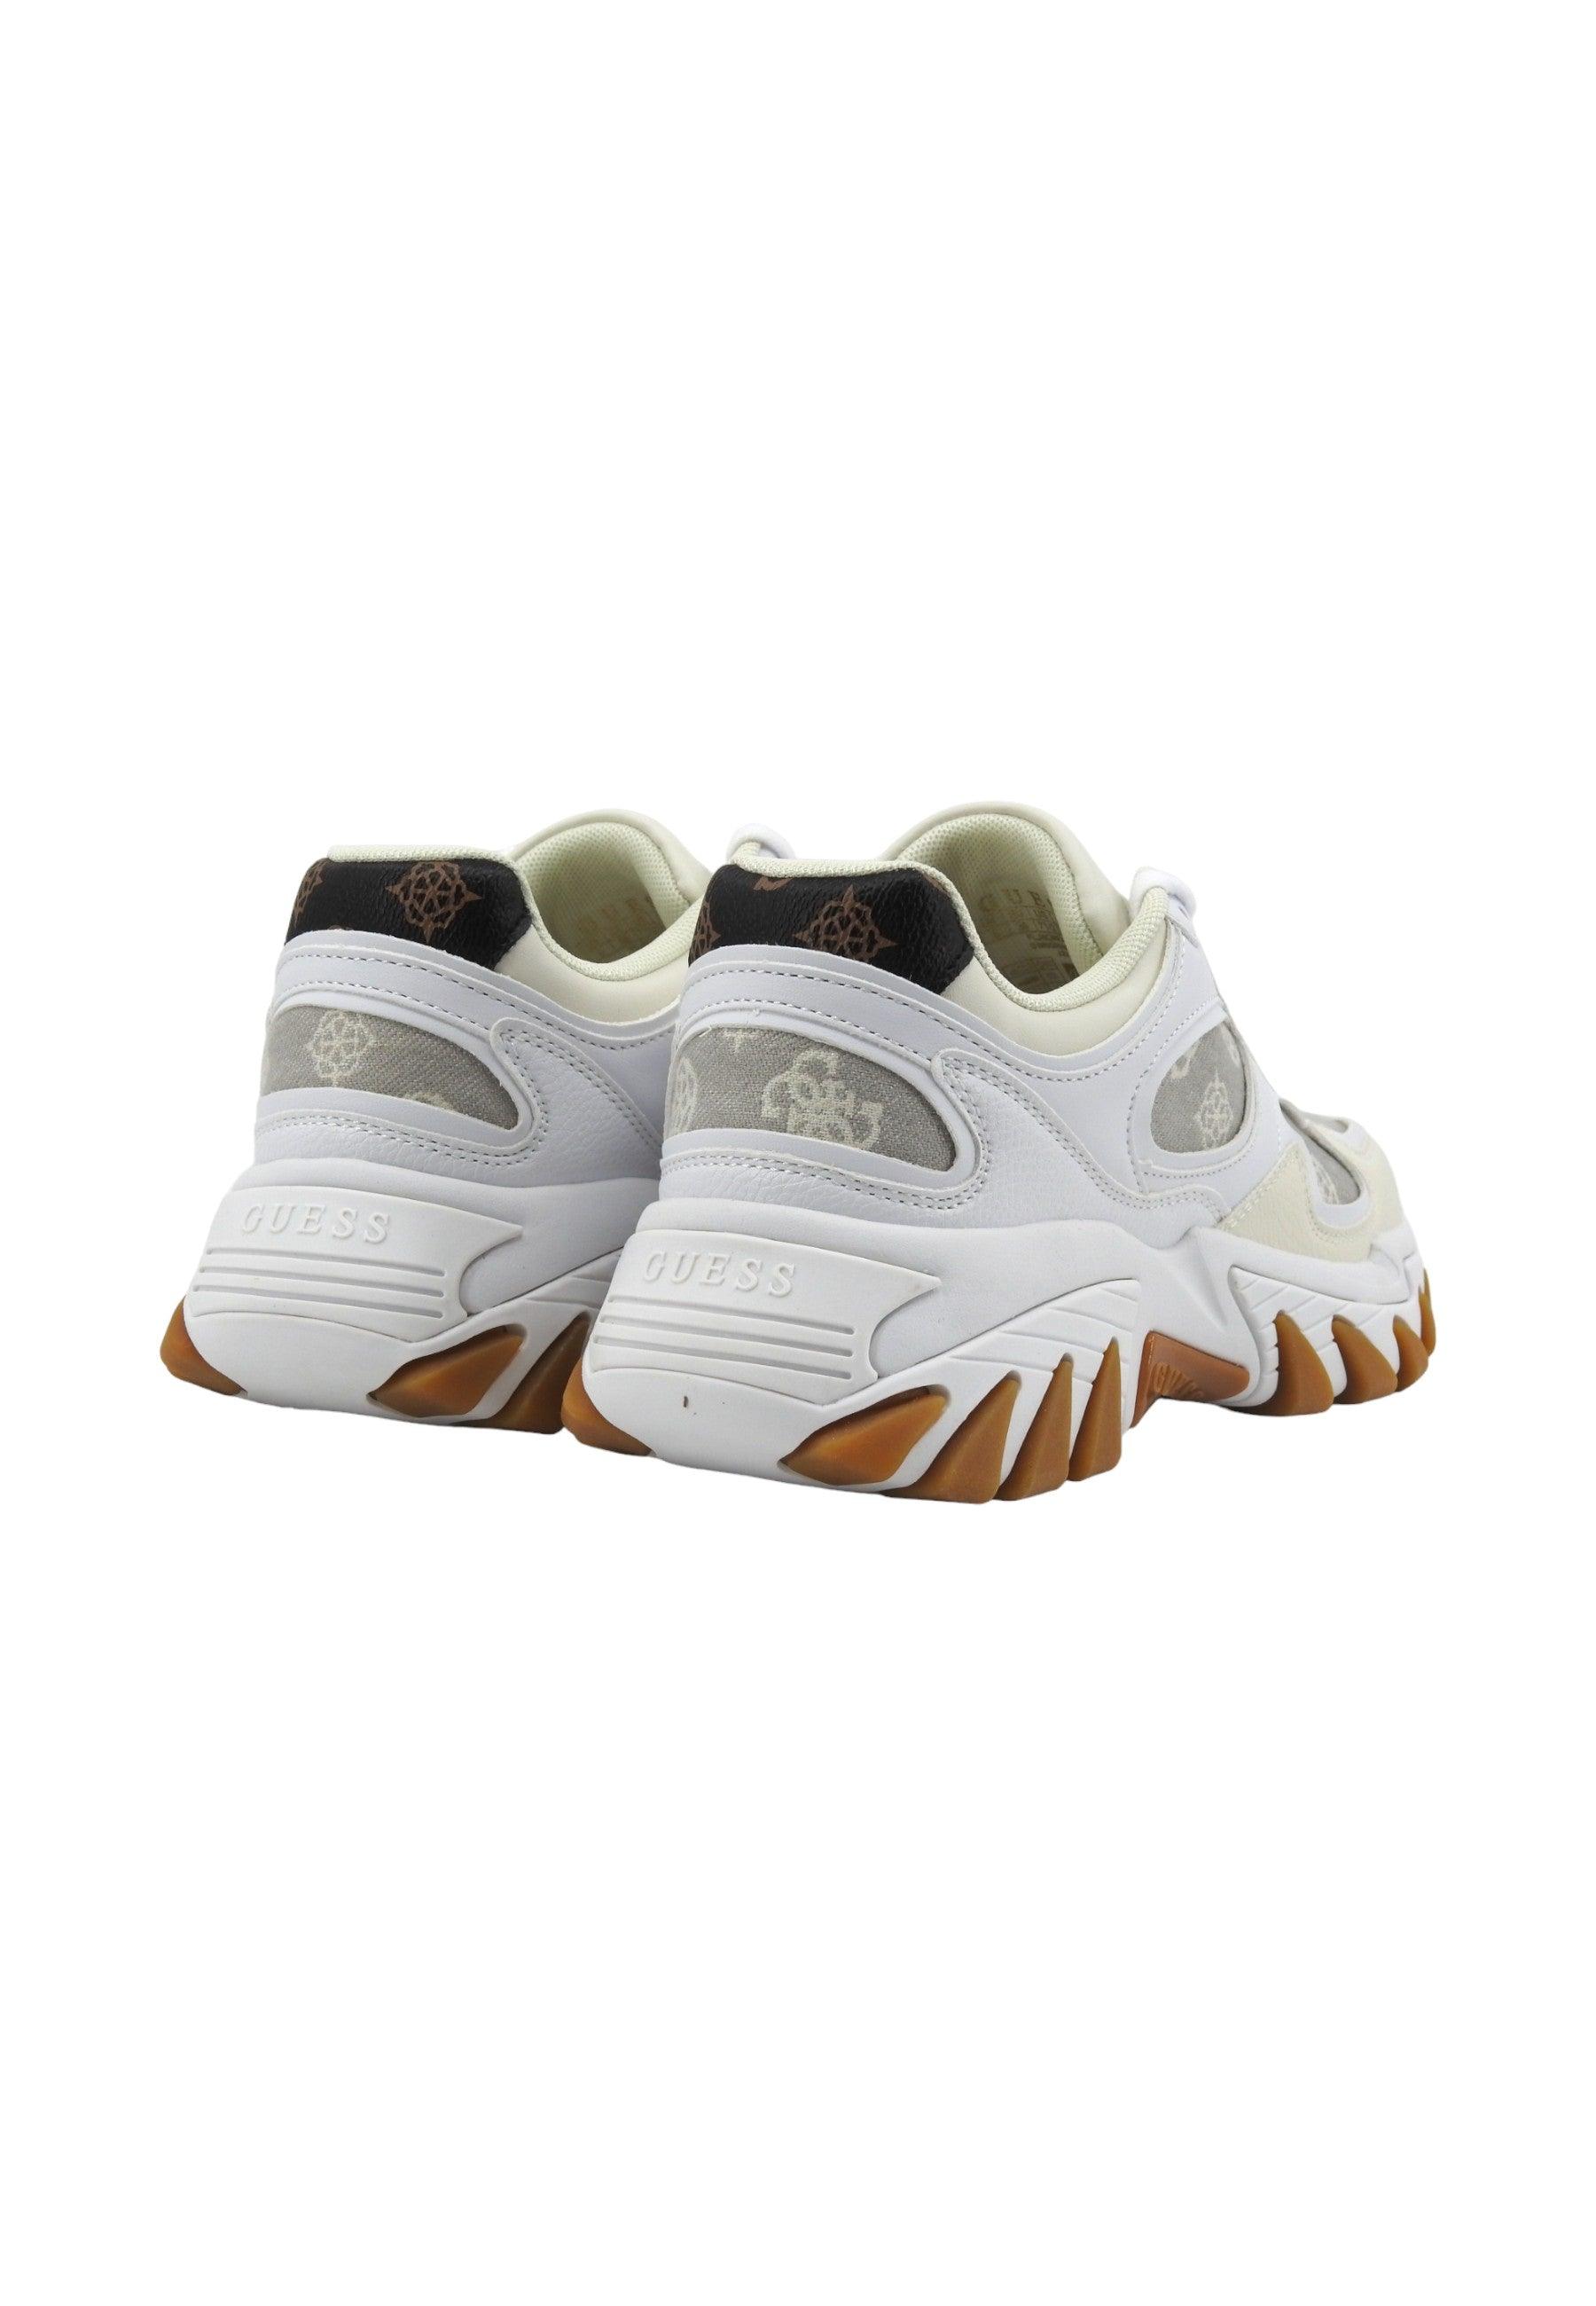 GUESS Sneaker Donna Denim Taupe Bianco FLJNORFAL12 - Sandrini Calzature e Abbigliamento